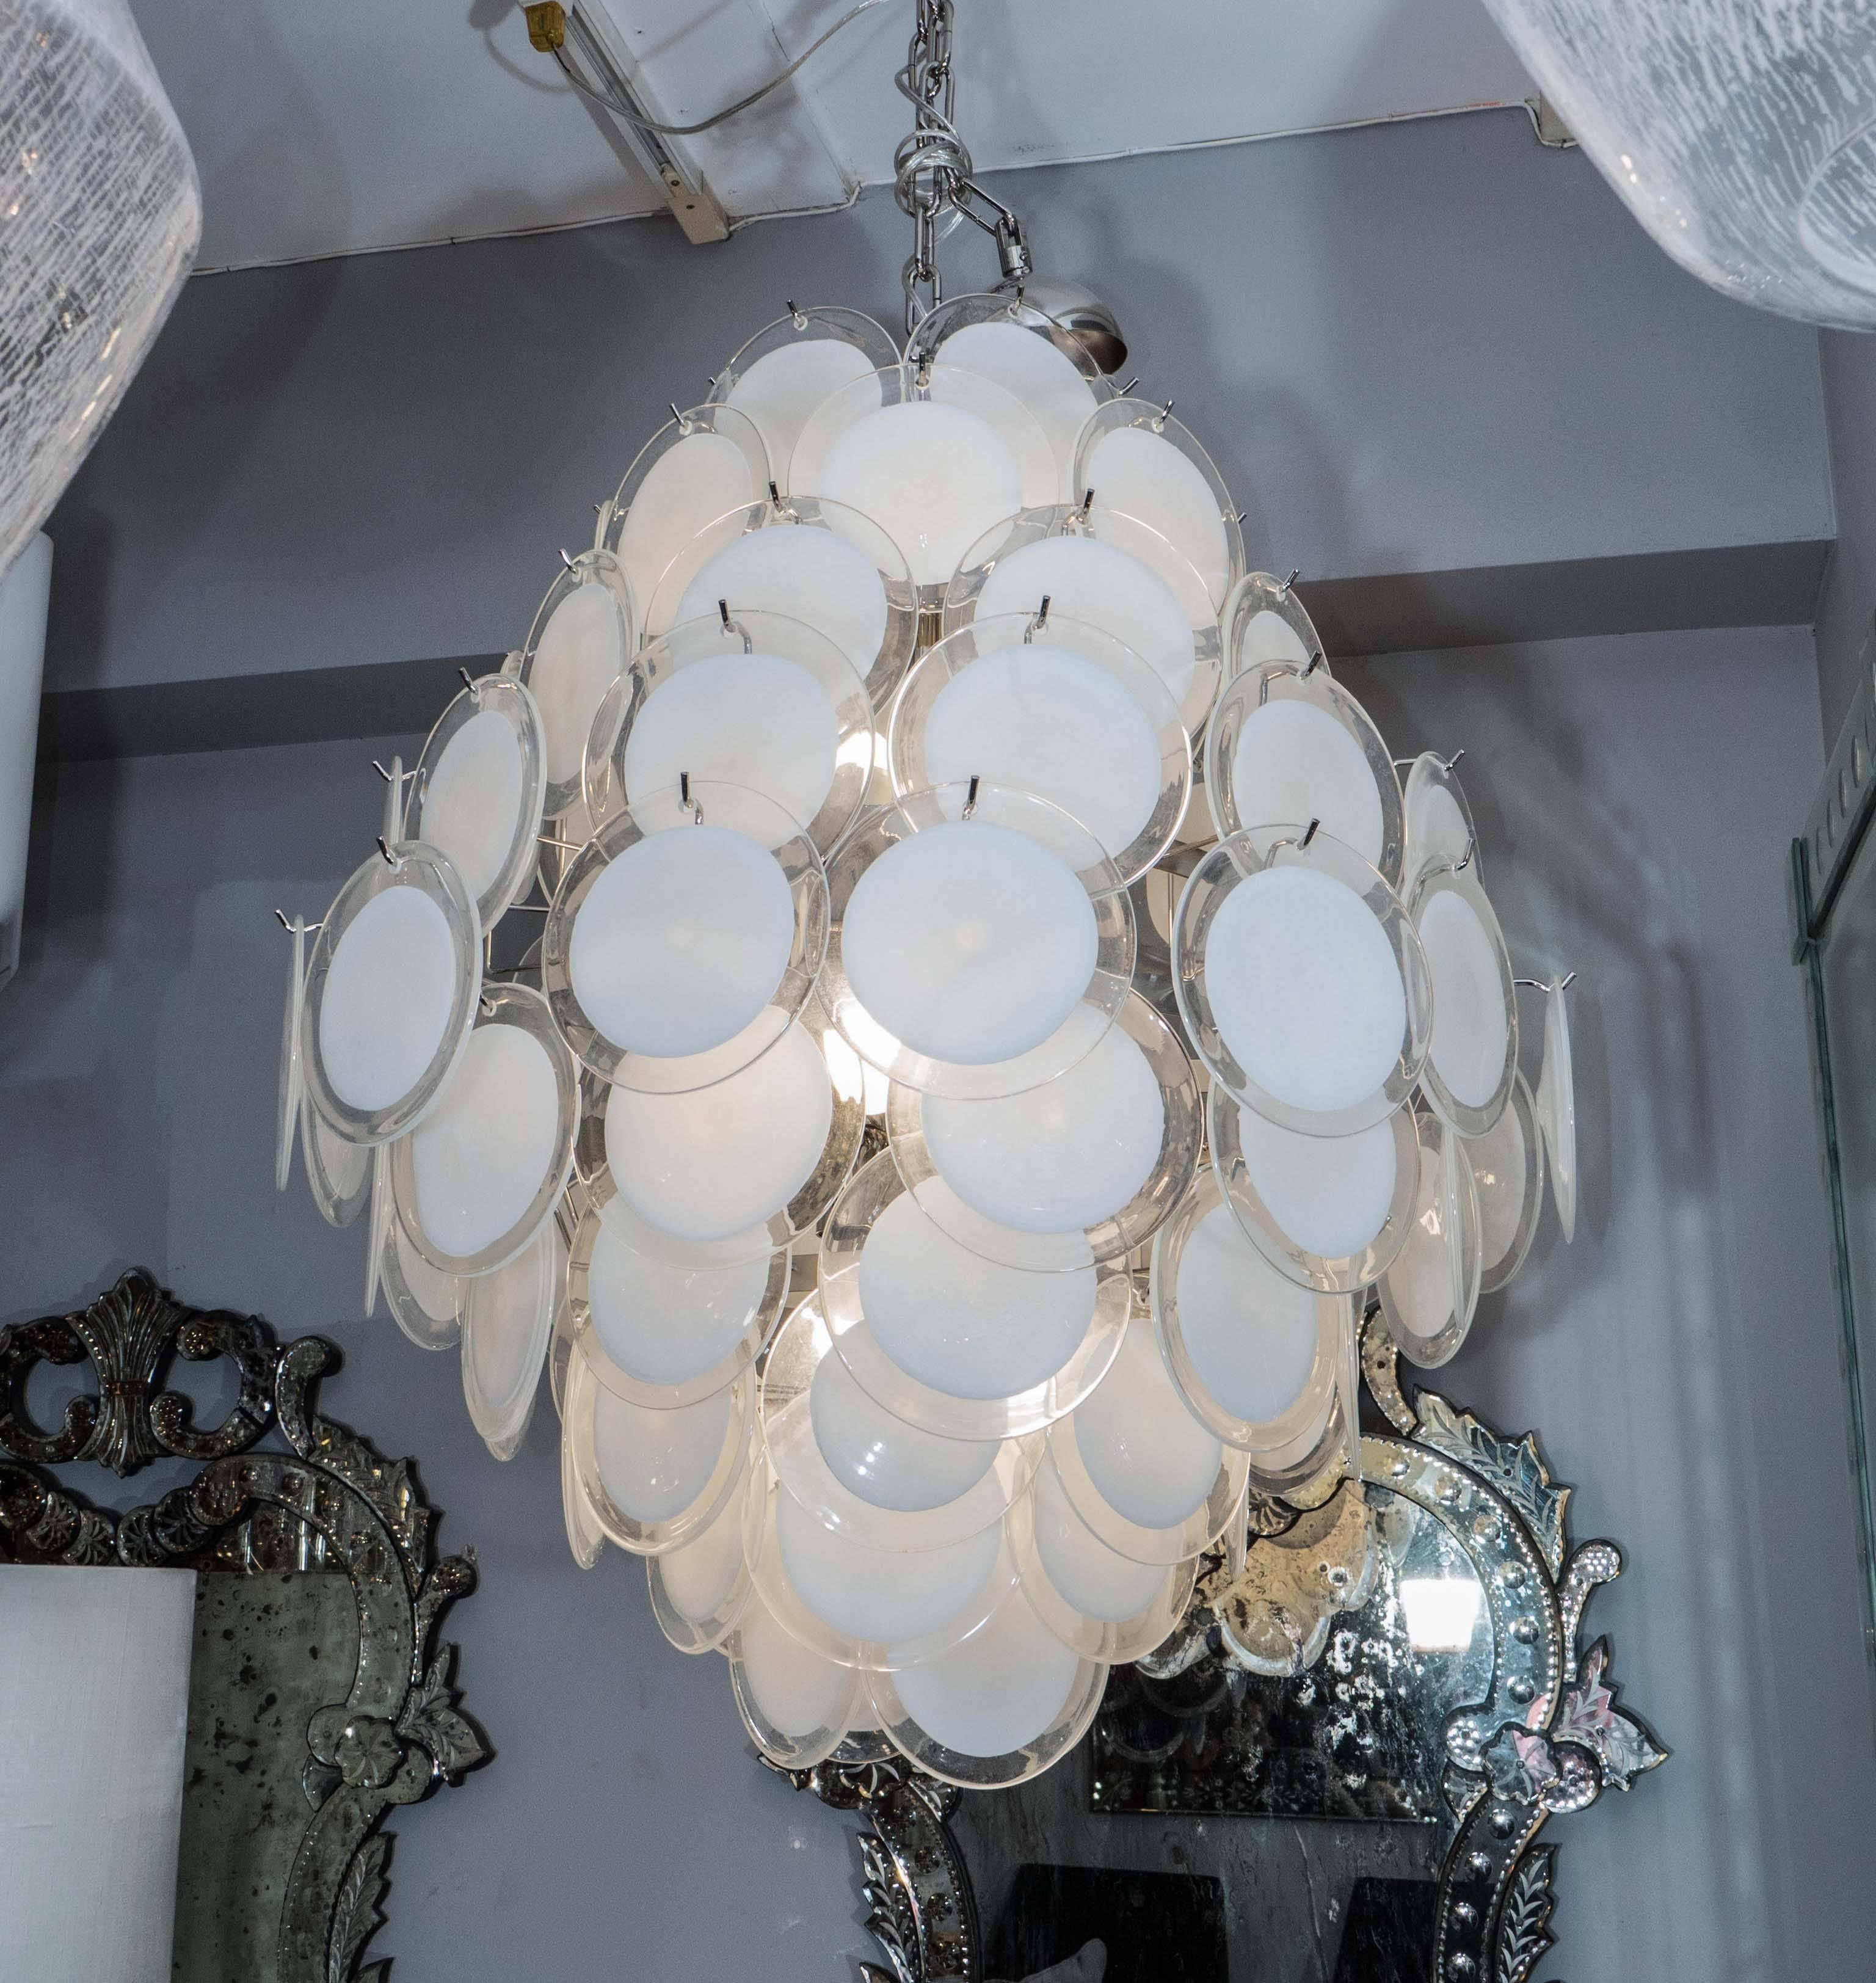 Lustre à disques en verre blanc de Murano en forme de double cône, réalisé sur mesure. La personnalisation est possible dans différentes tailles, finitions et couleurs de verre.